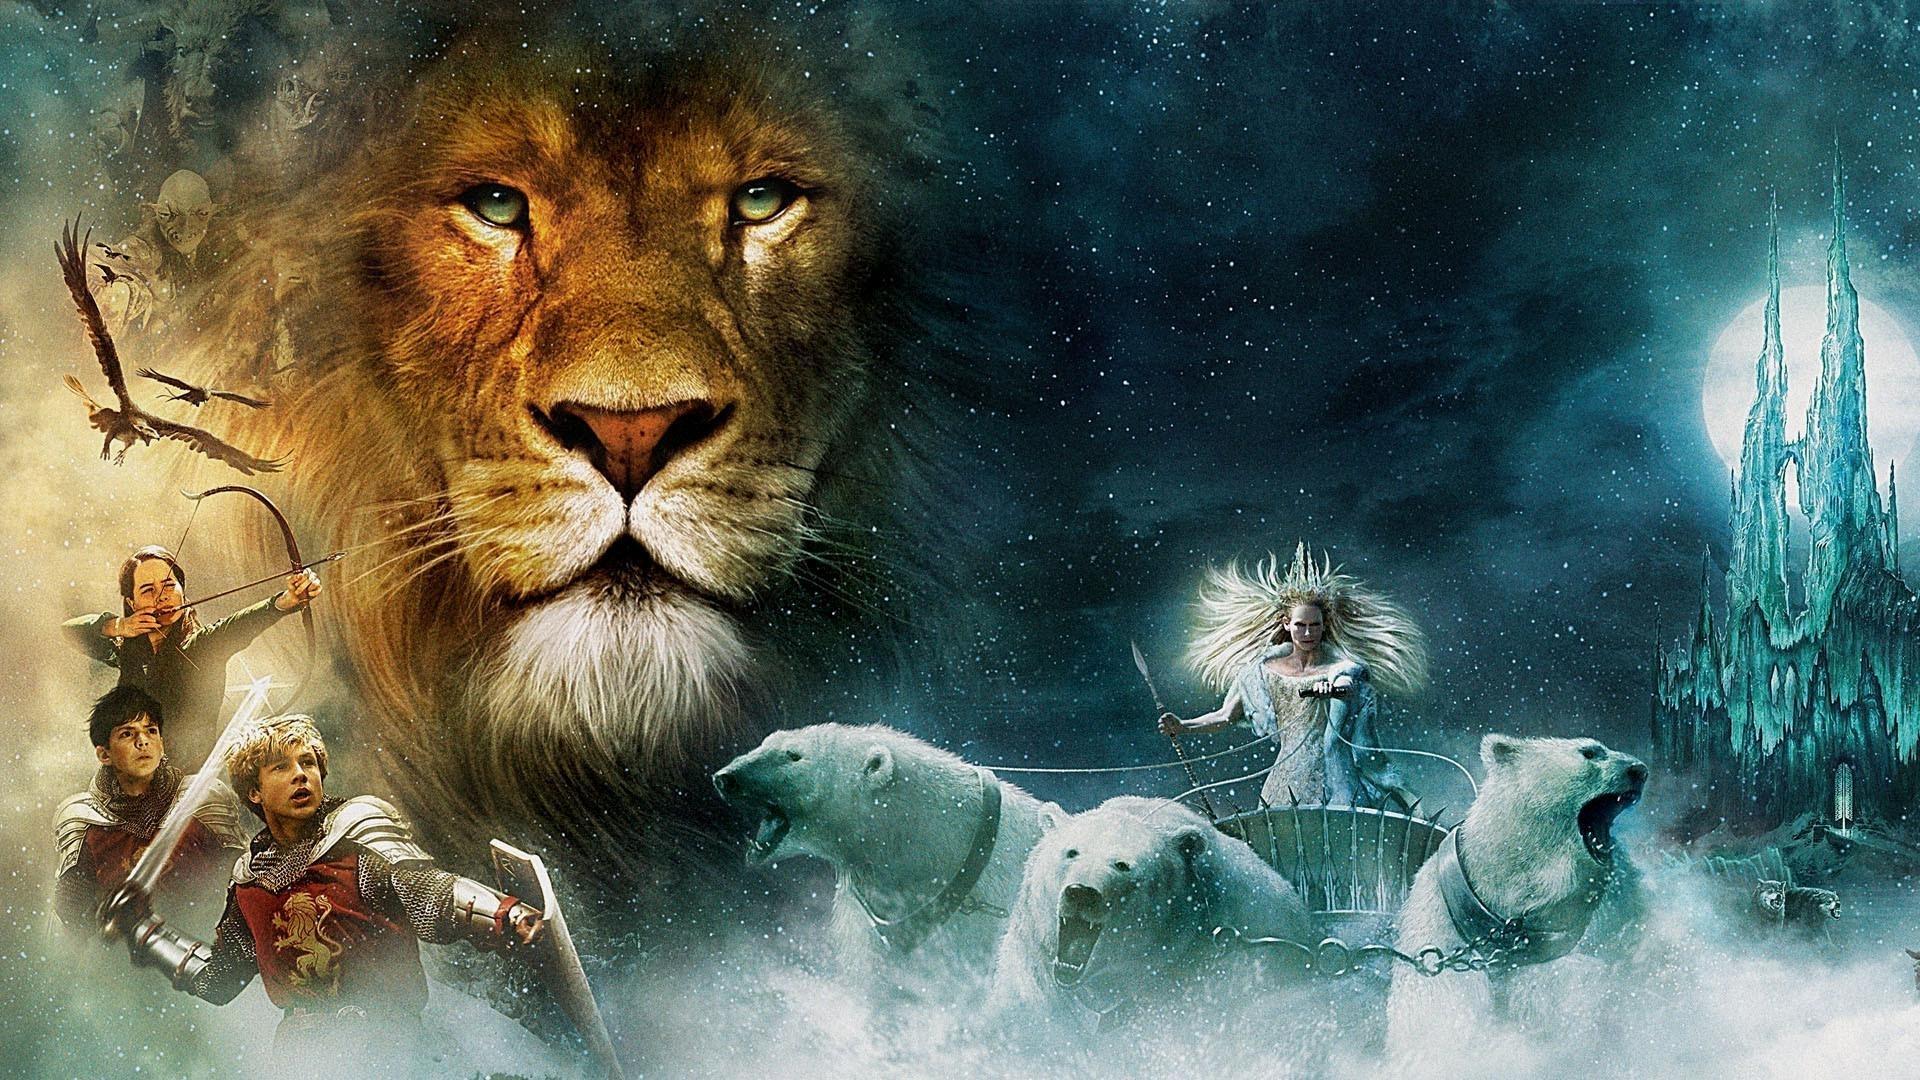 فیلم  The Chronicles of Narnia: The Lion, the Witch and the Wardrobe 2005 با زیرنویس چسبیده